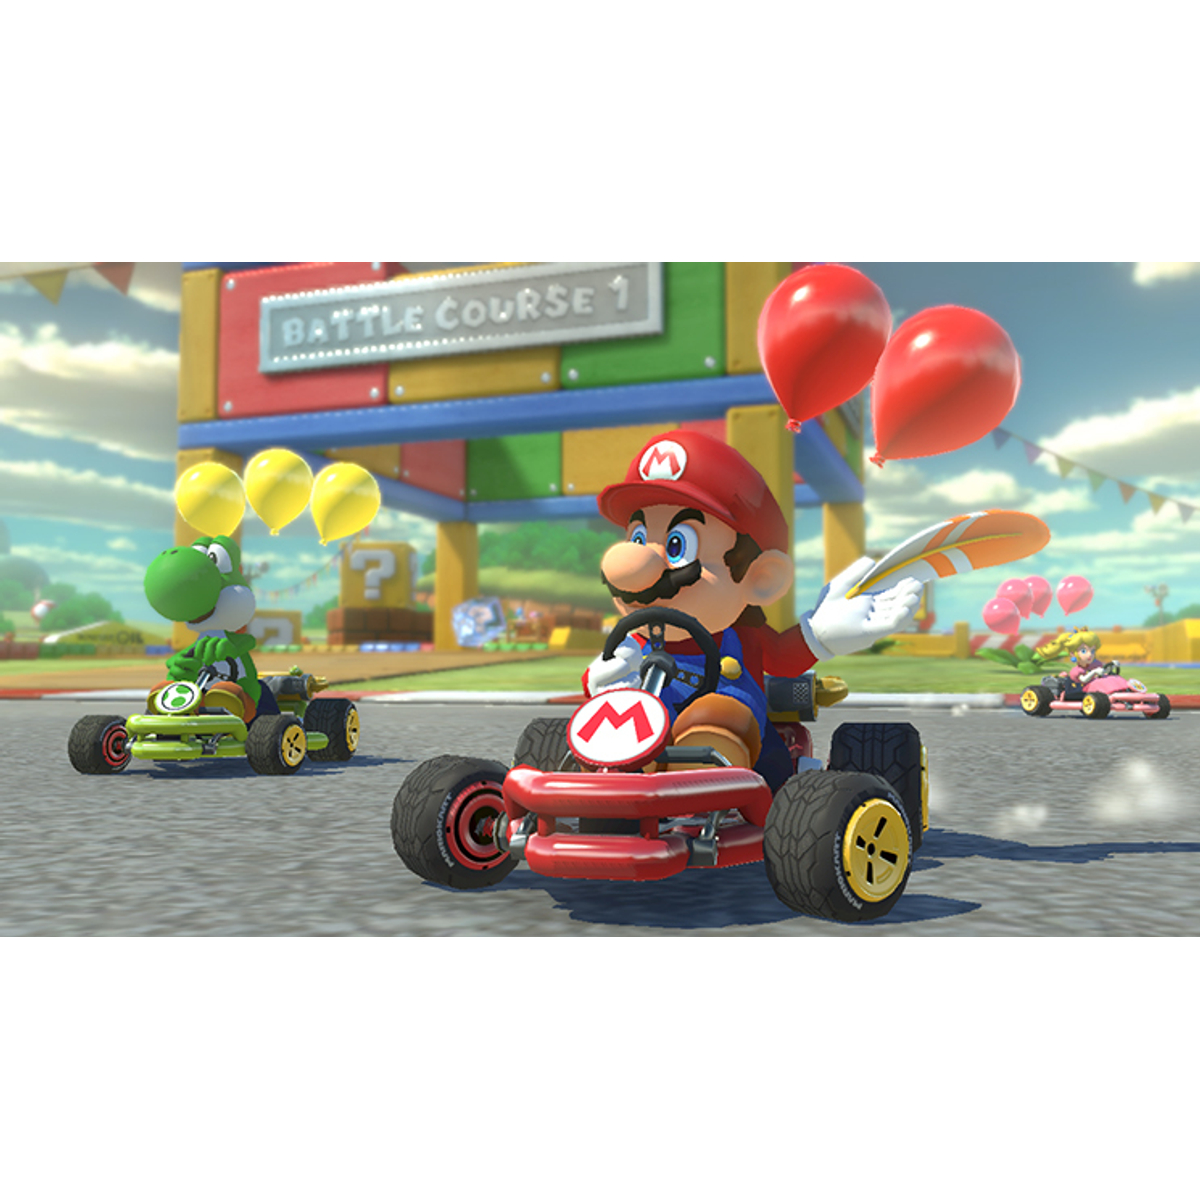 Mario Kart 8 - Deluxe